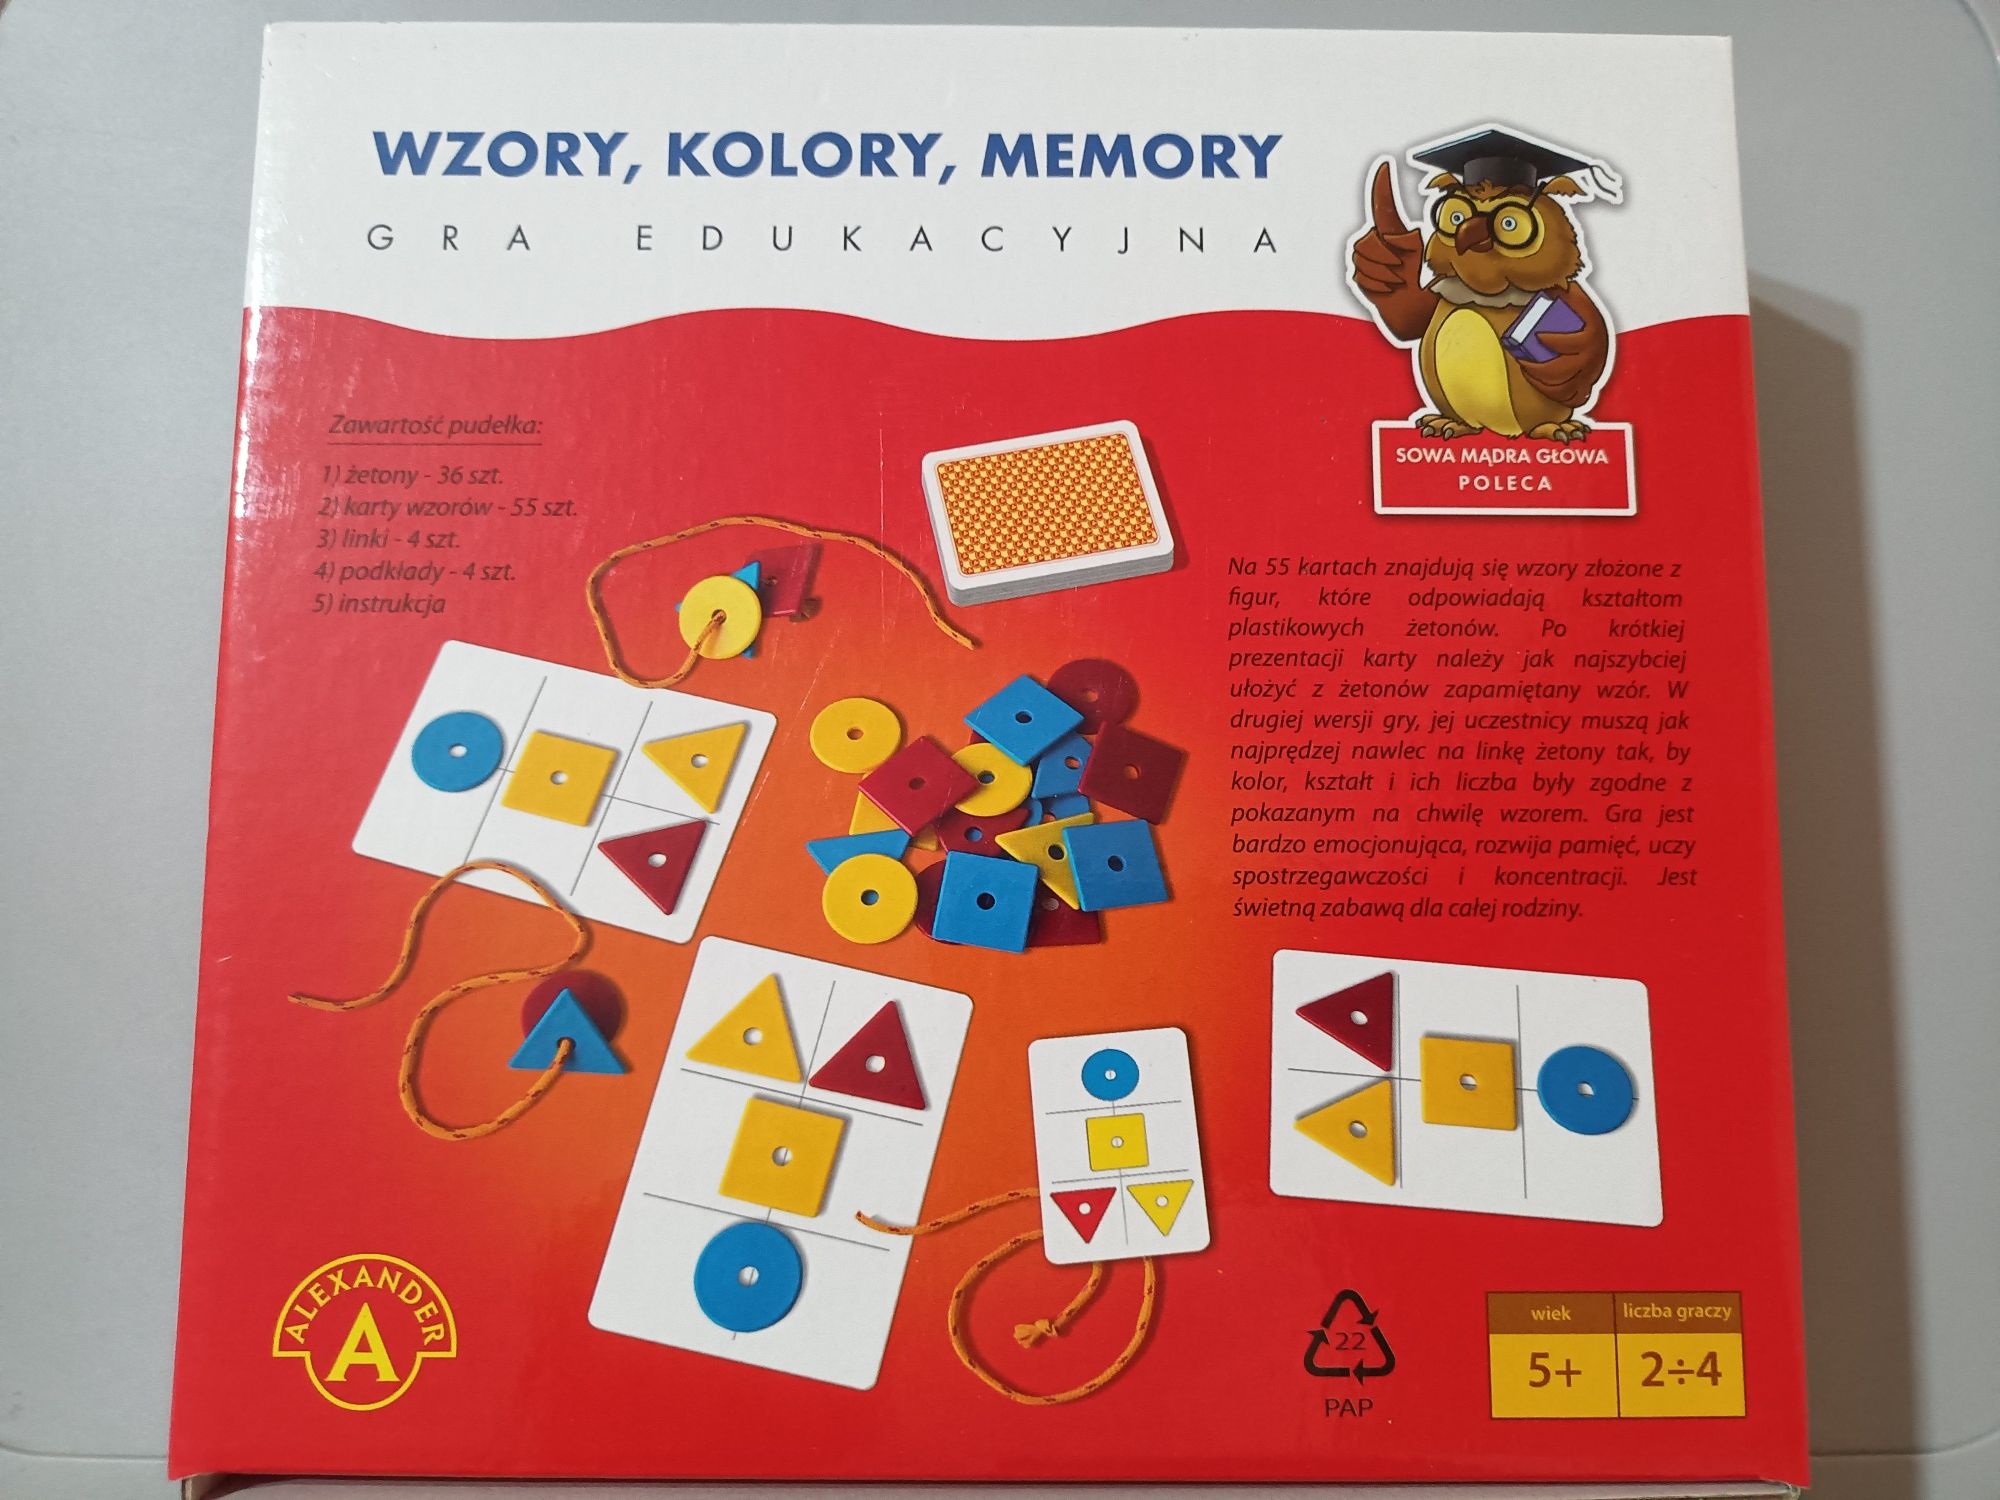 Alexander Gra edukacyjna wzory kolory memory pamięć logiczna